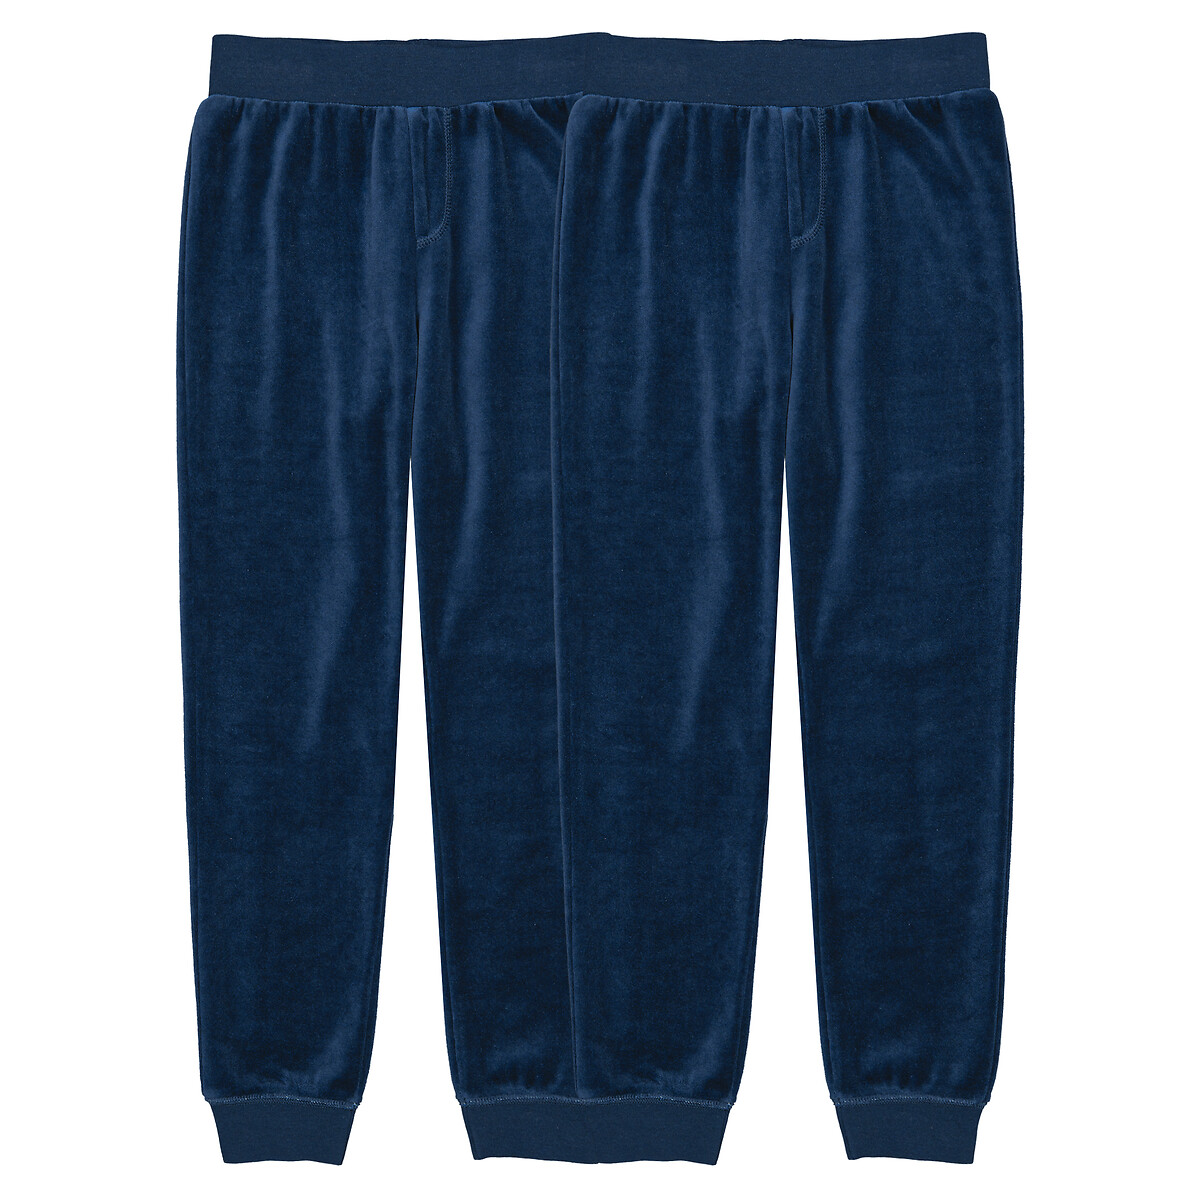 Комплект из двух брюк пижамных из велюра 3 года - 94 см синий комплект из 3 пижам из велюра 3 года 94 см бежевый